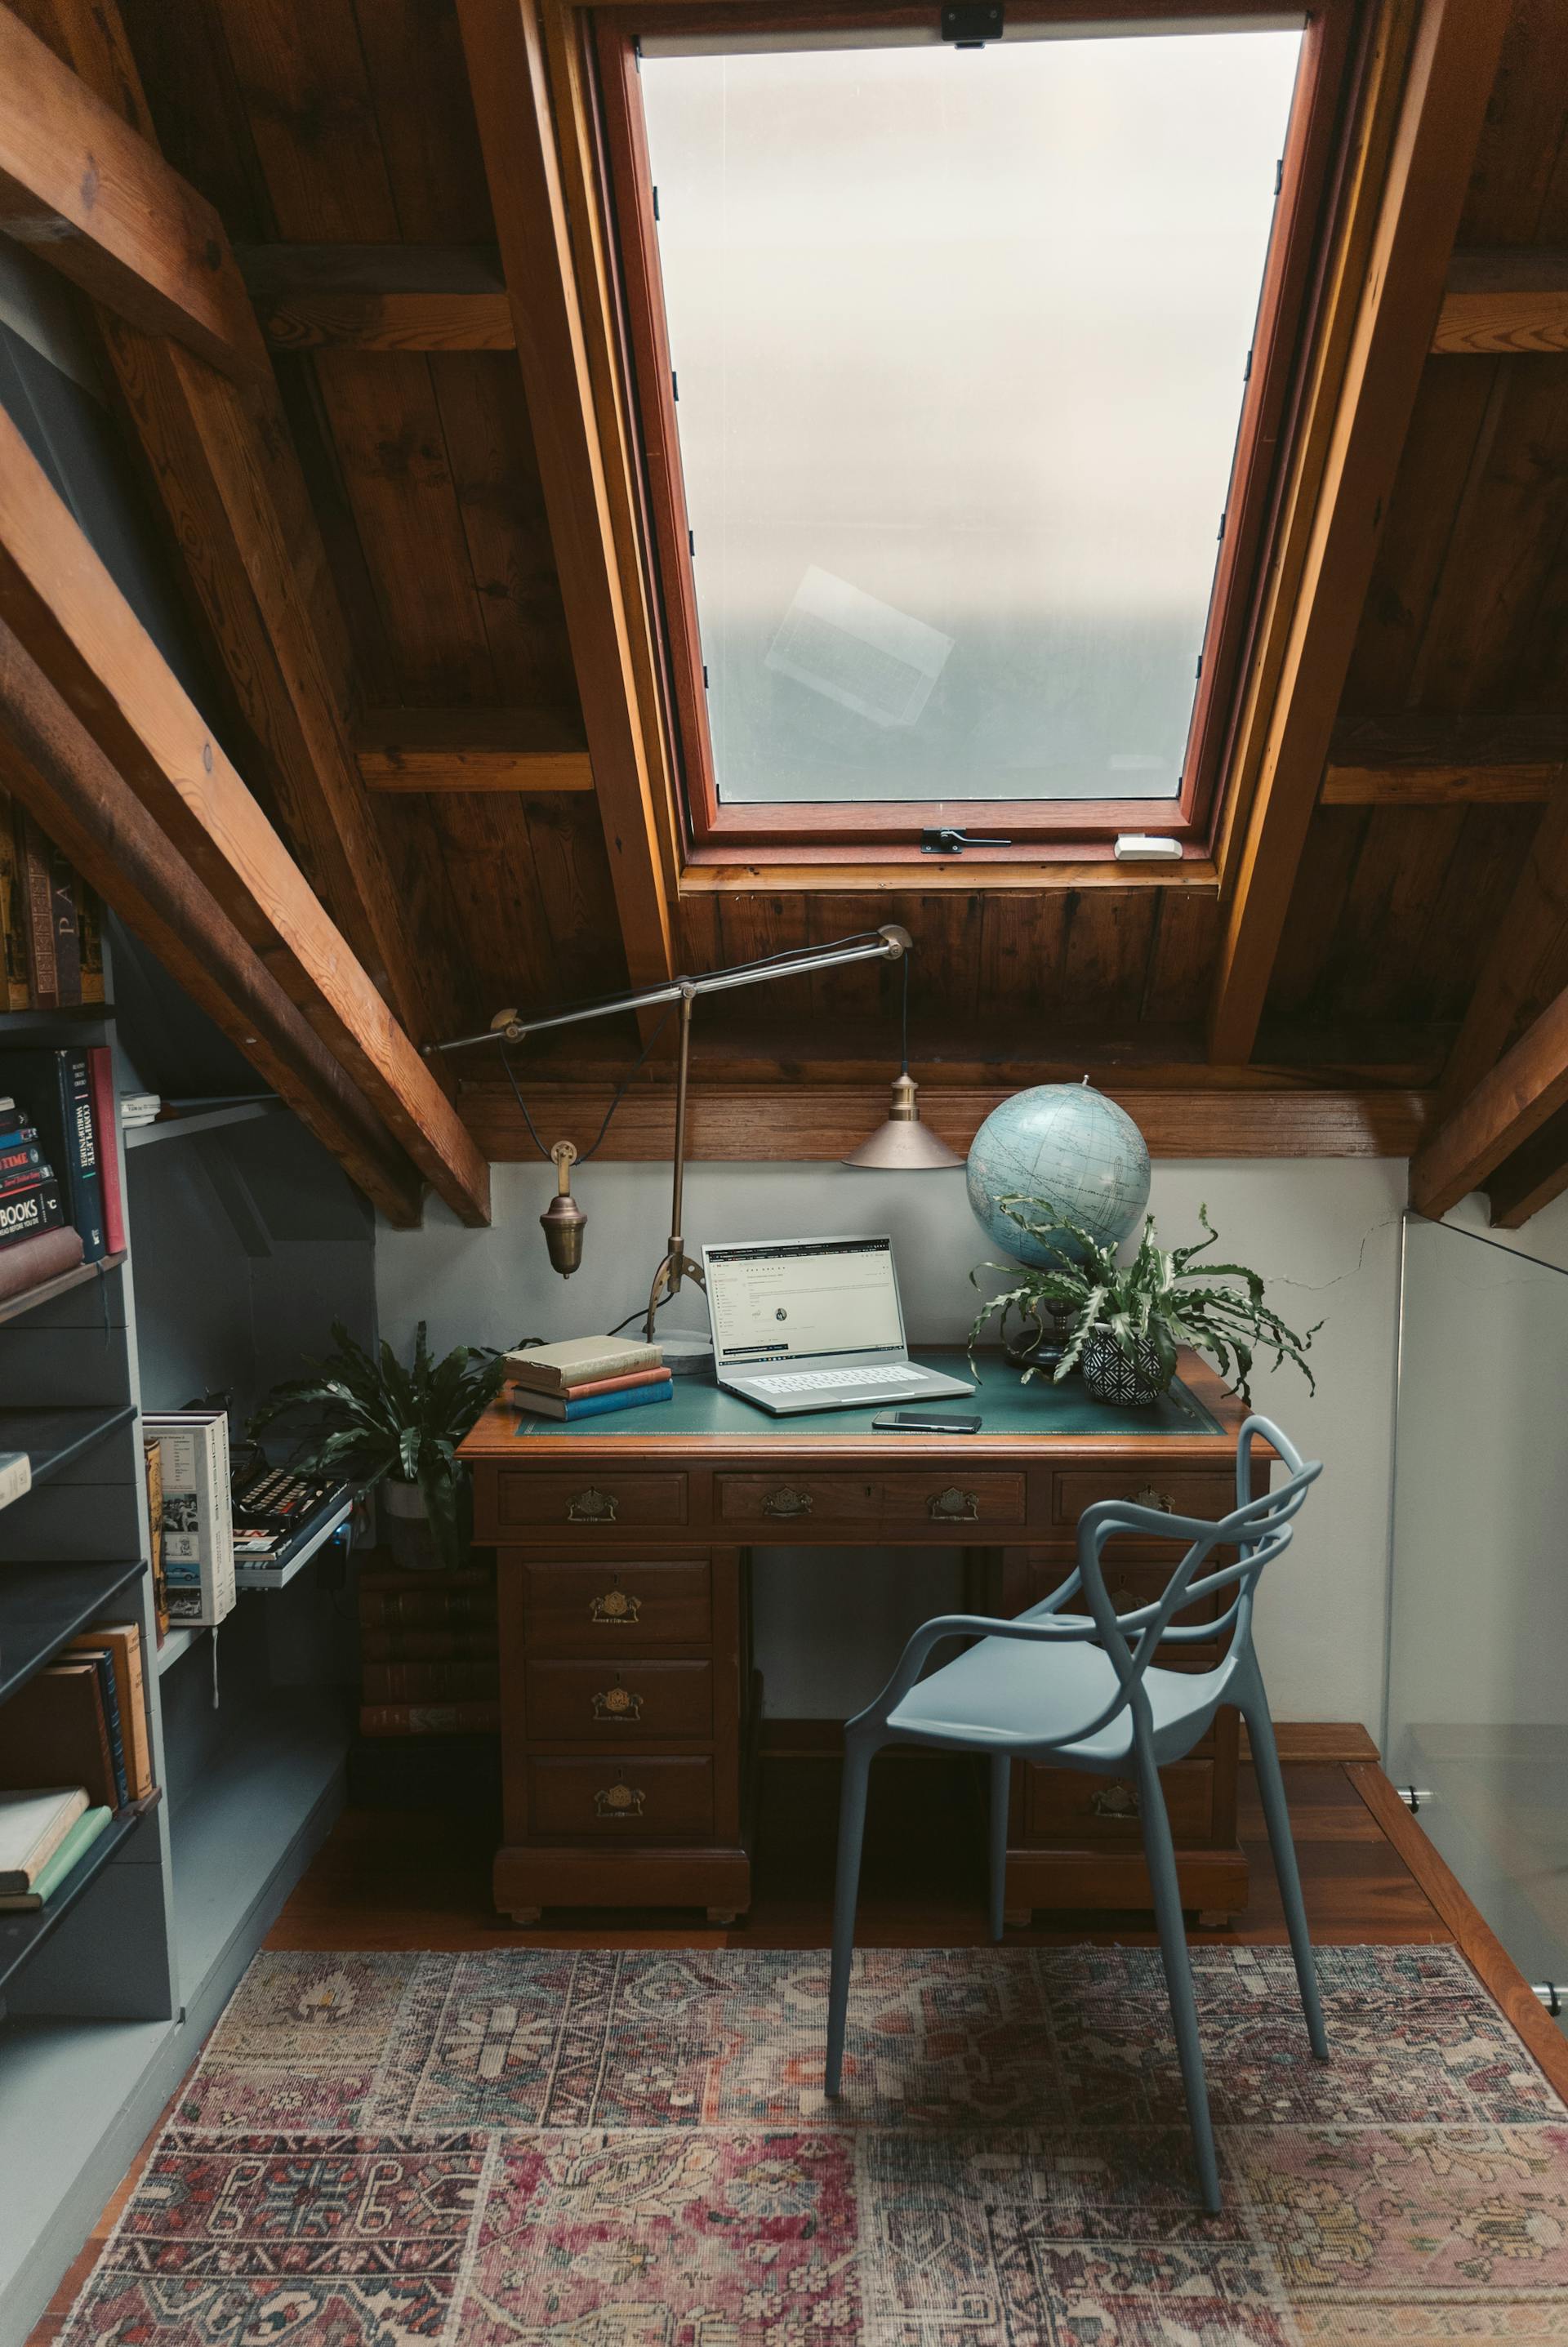 Una sala de estudio en el ático | Fuente: Pexels